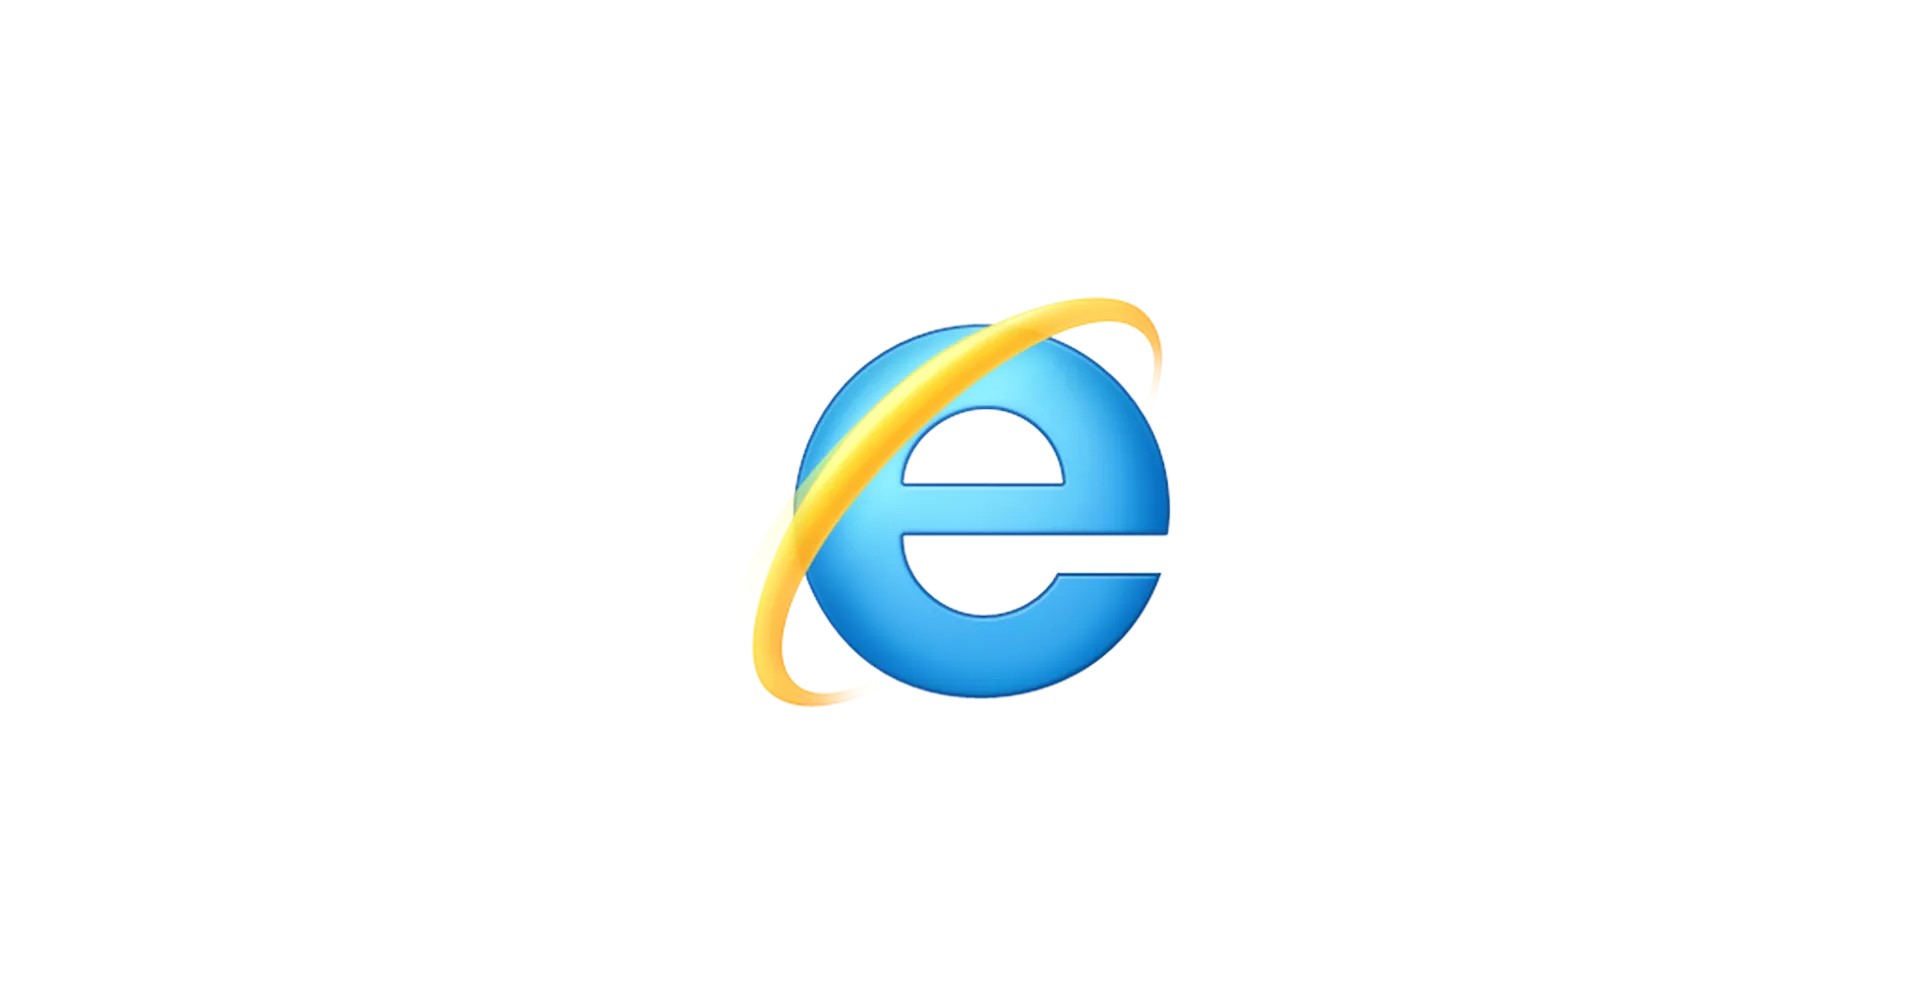 โบกมือลา! Internet Explorer 11 จะถูกหยุดสนับสนุนในกลางปีหน้า